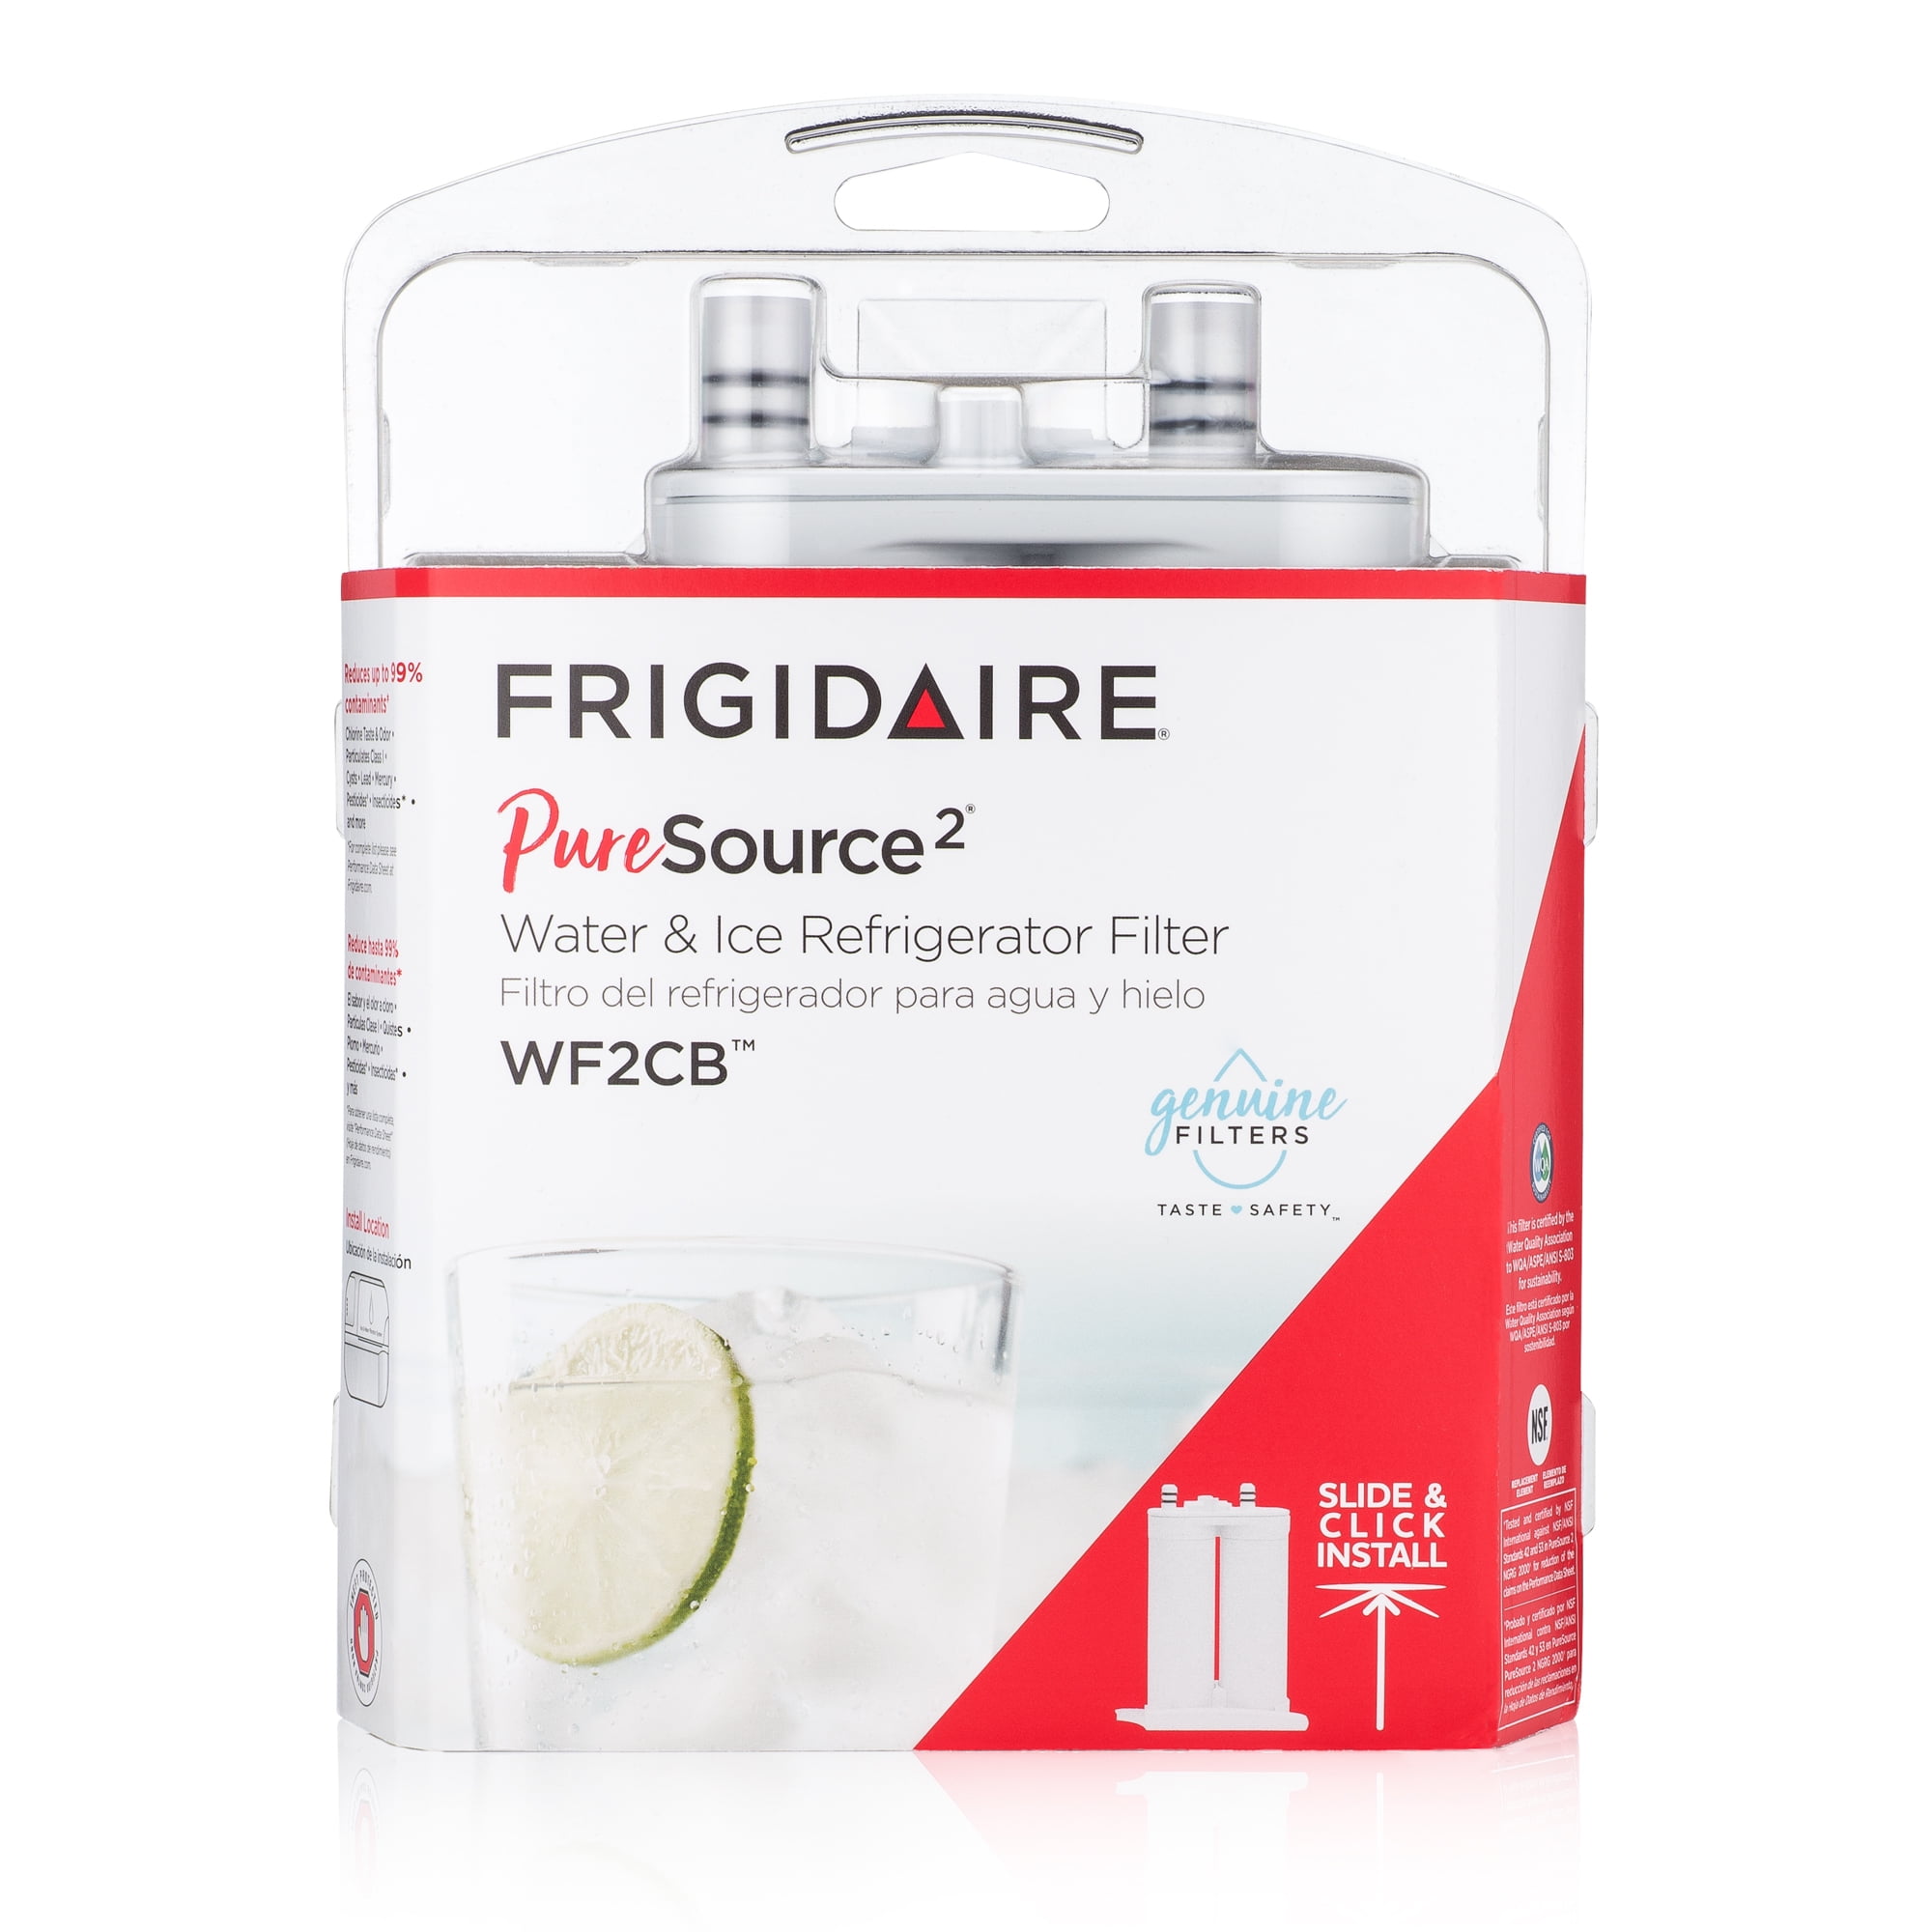 Frigidaire PureSource 2 Comp Refrigerator Filter WF2CB - Walmart.com